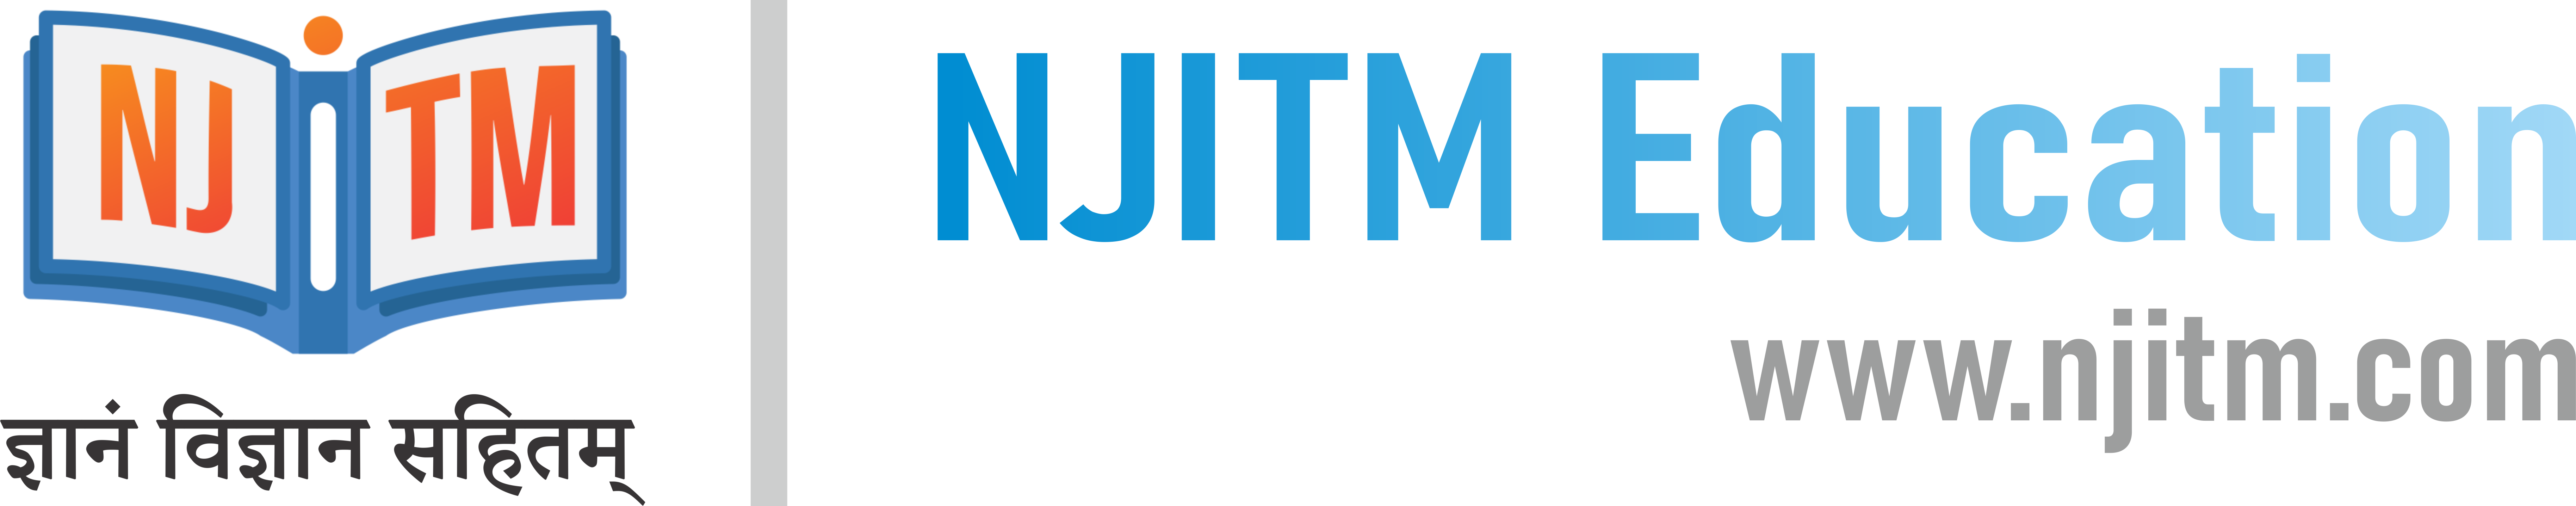 NJITM logo